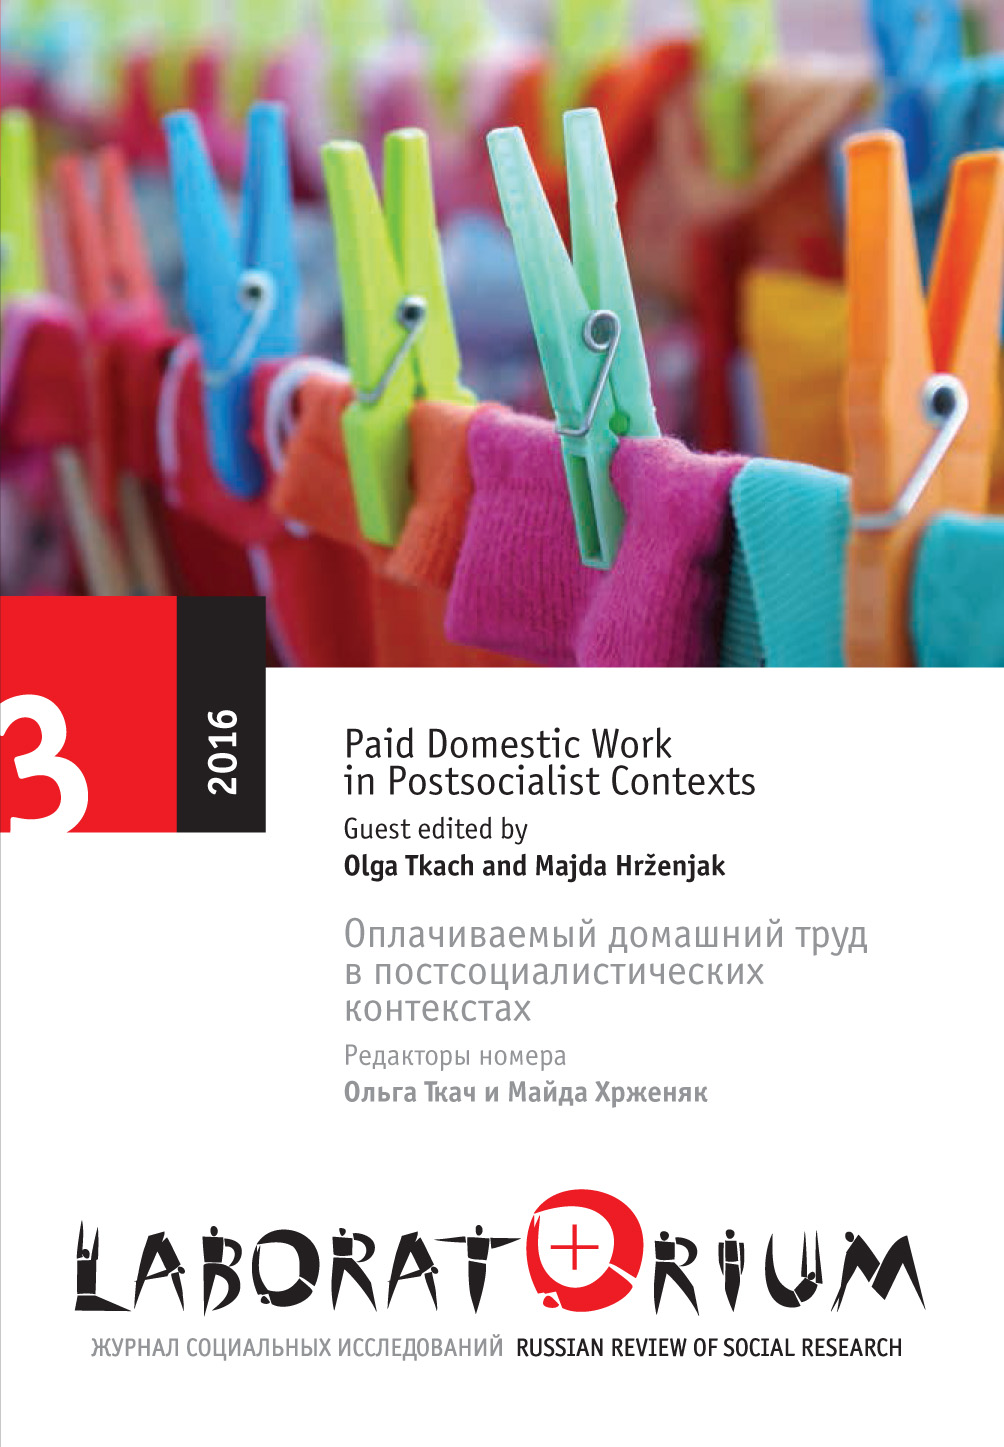 Оплачиваемый домашний труд в постсоциалистических контекстах: региональные особенности глобального феномена. Введение